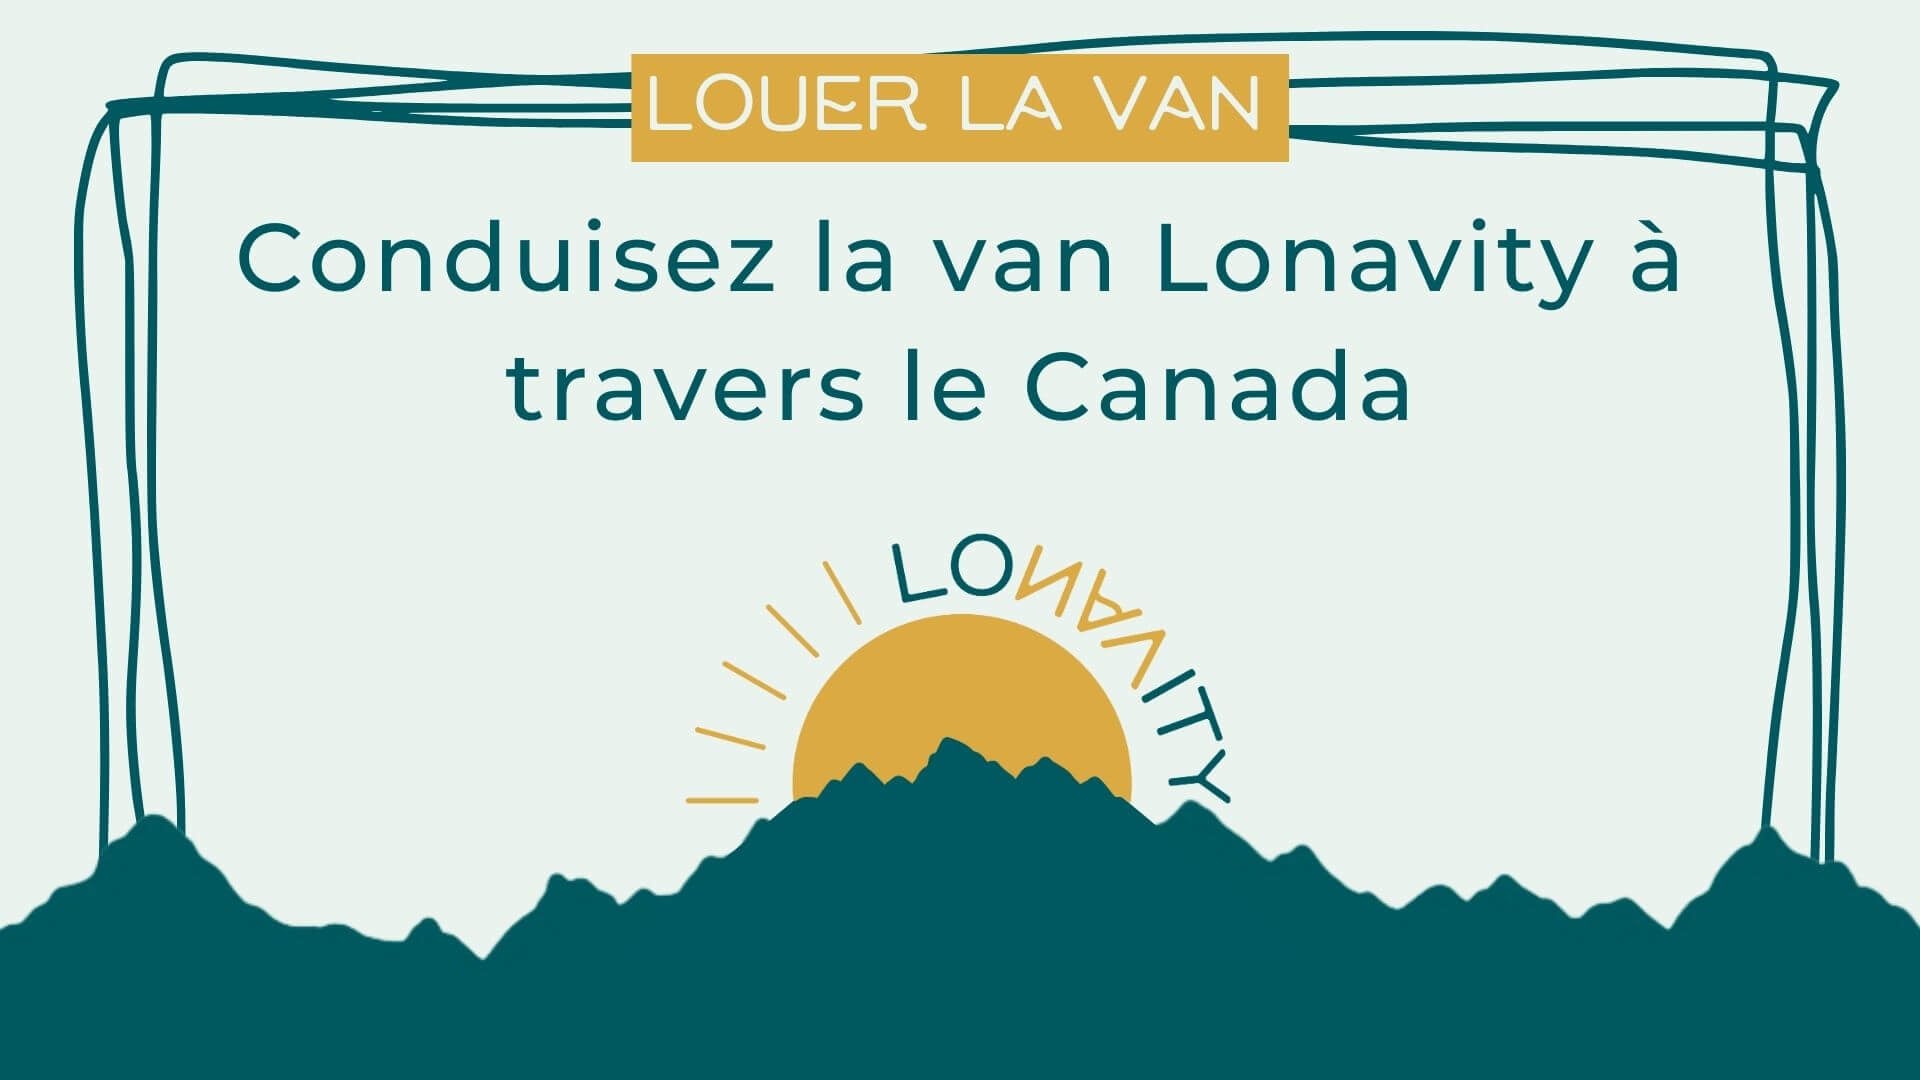 Lonavity - Louer la van pour voyager à travers le Canada